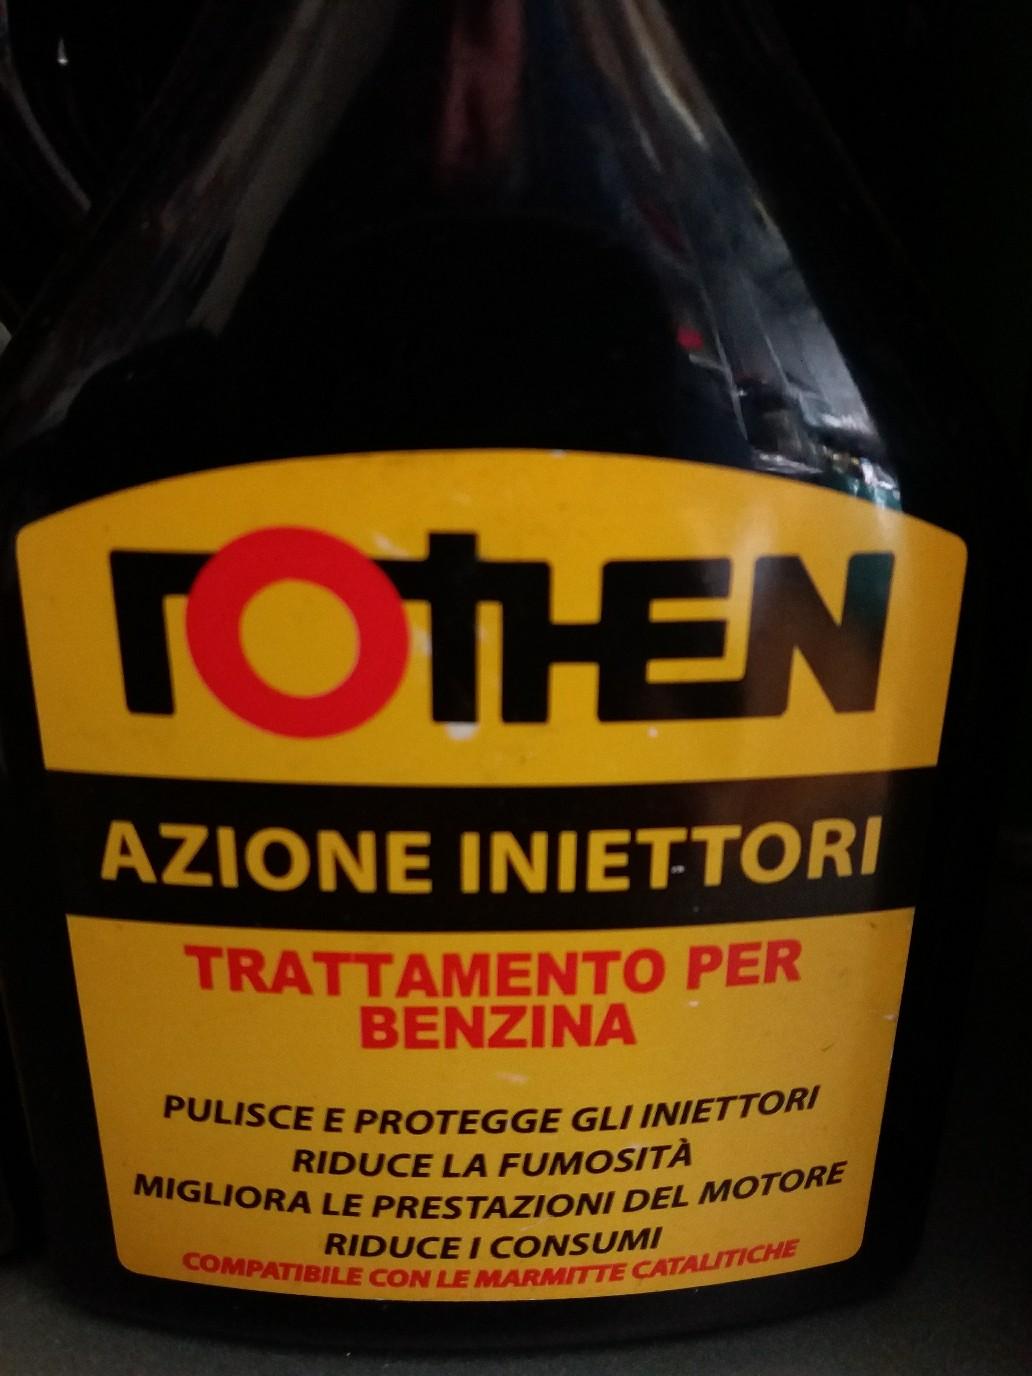 Rothen Azione Iniettori Additivo Benzina in 73054 Acquarica del Capo for  €8.00 for sale